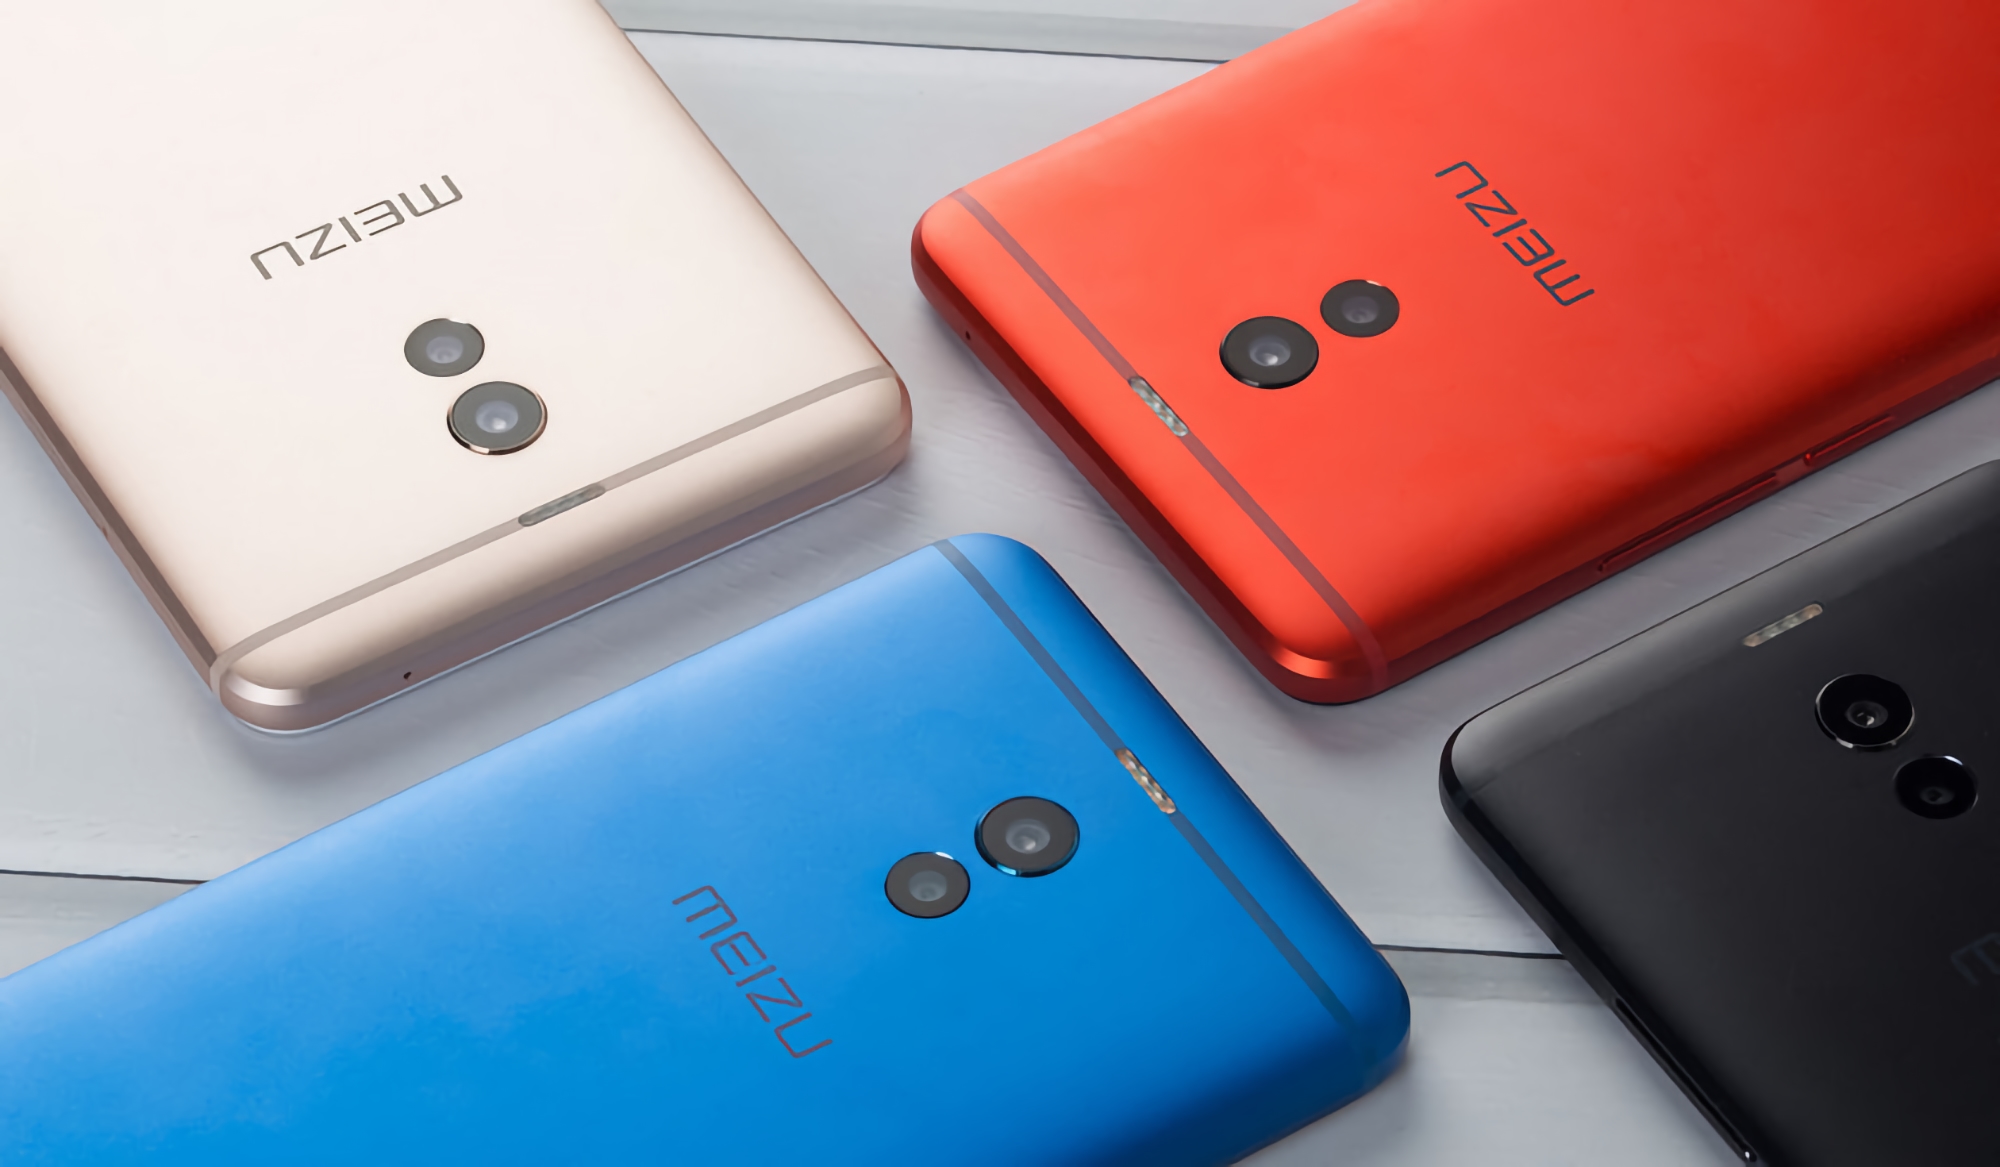 Ya es oficial: Meizu volverá a lanzar smartphones económicos bajo la marca Blue Charm